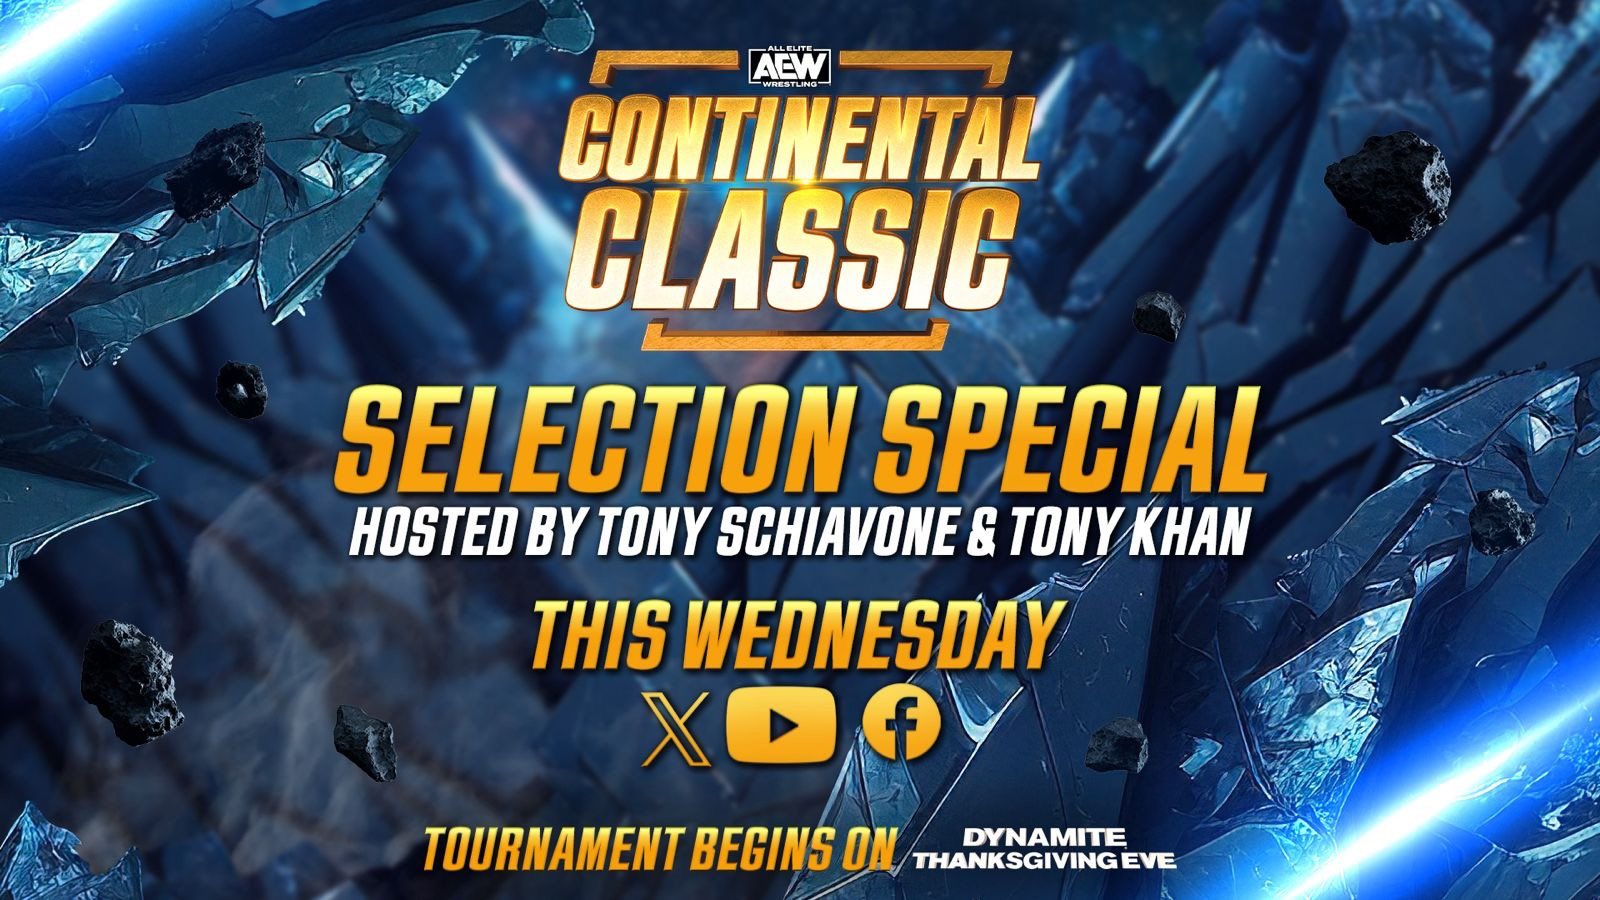 AEW : Tout savoir avant le début du tournoi Continental Classic ce mercredi à Dynamite.